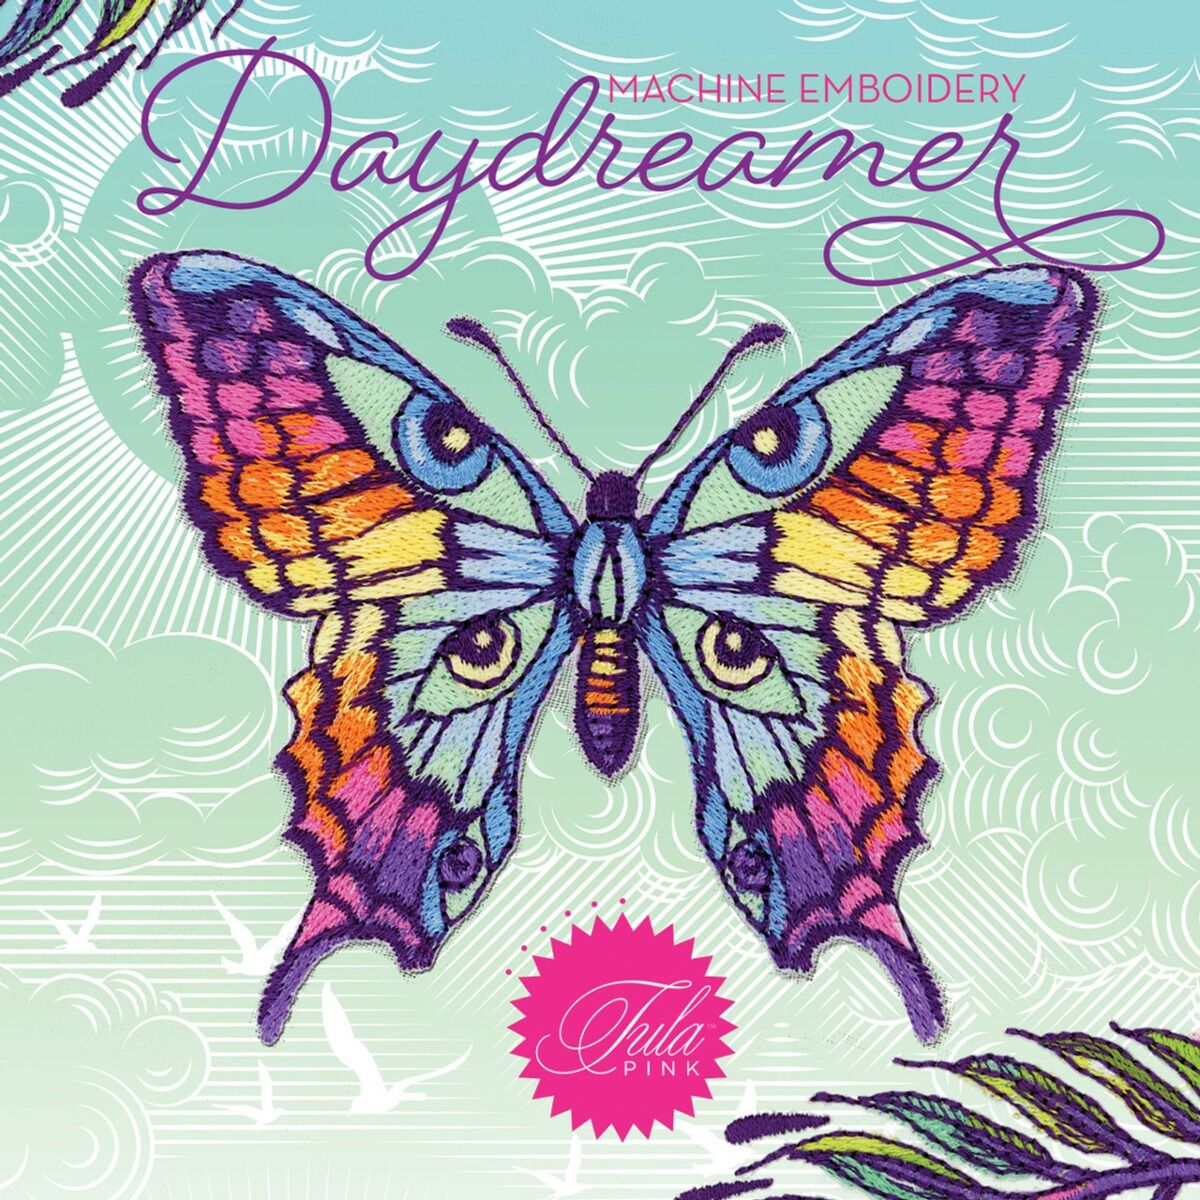 Disk OESD Daydreamer,Disk OESD Daydreamer,Disk OESD Daydreamer,Disk OESD Daydreamer,Disk OESD Daydreamer